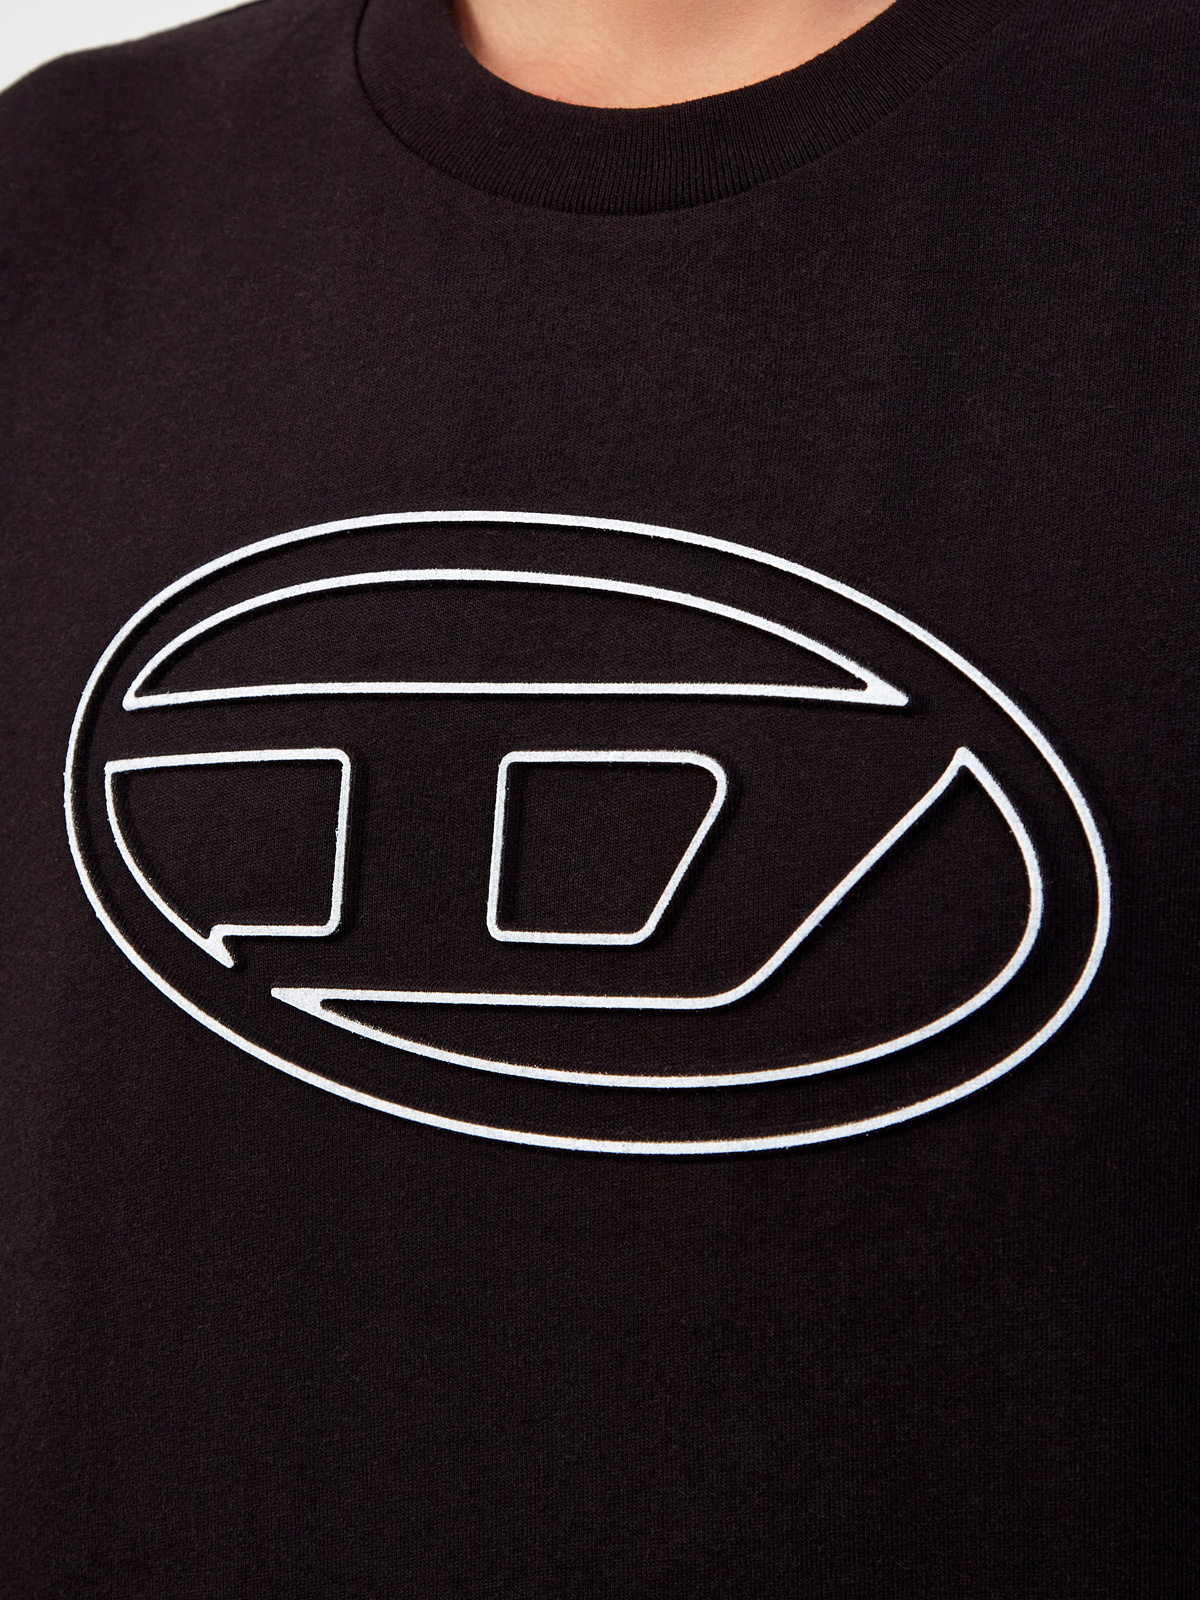 Футболка T-Just из джерси с контрастным логотипом Oval D DIESEL, цвет черный, размер M;L;XL;2XL - фото 5